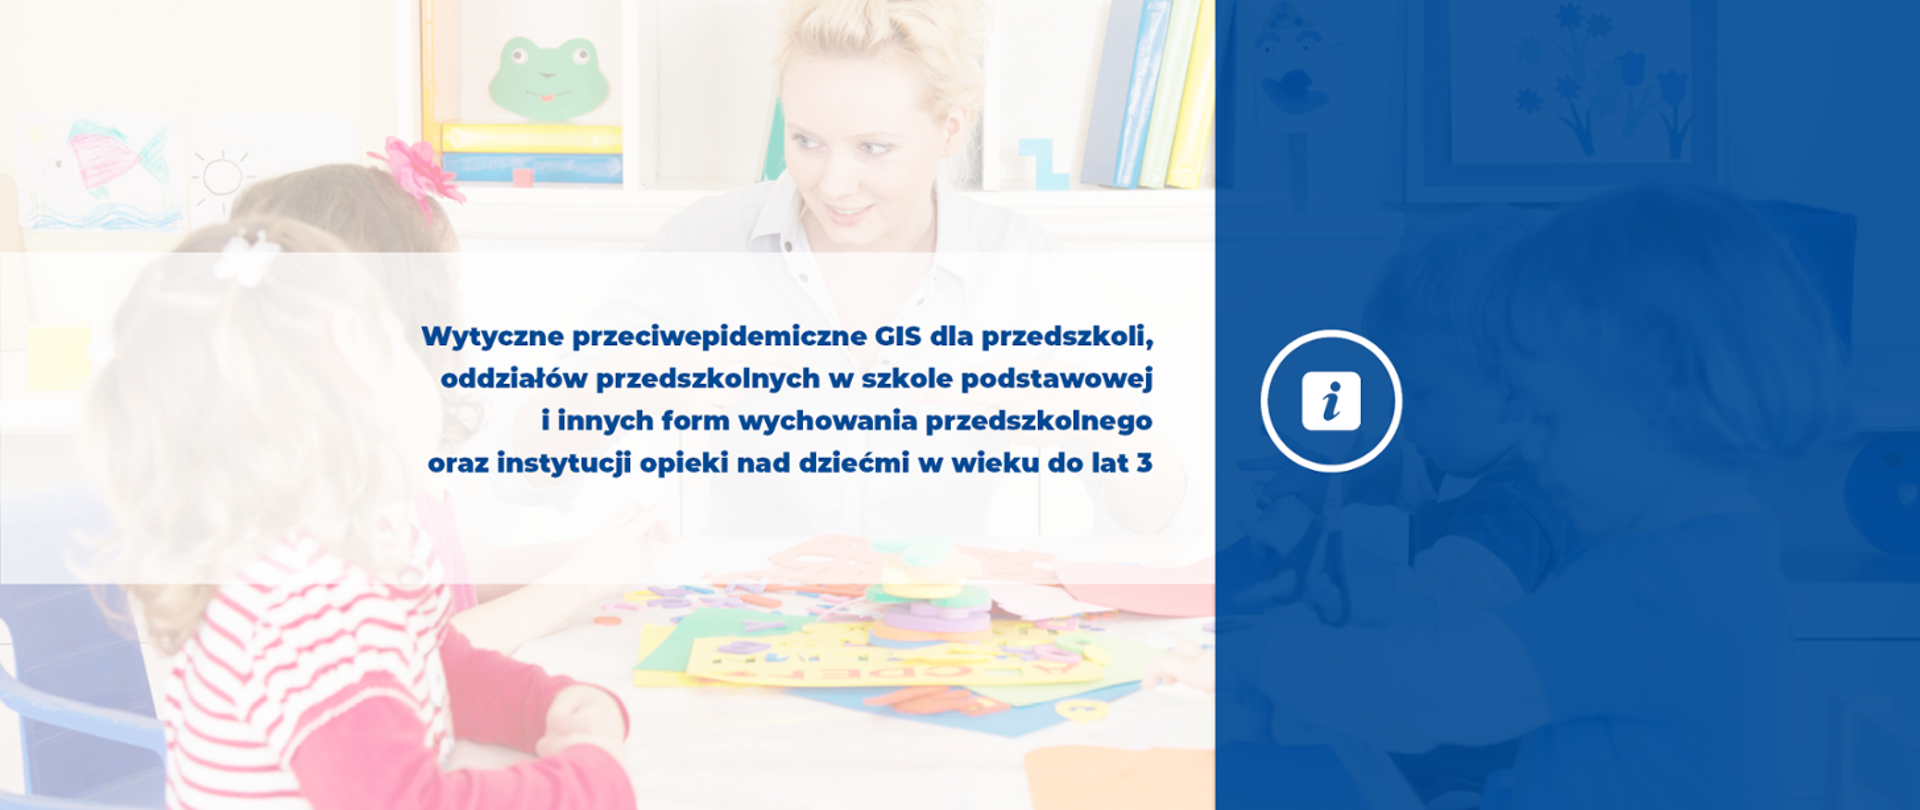 Baner z napisem: Wytyczne przeciwepidemiczne GIS dla przedszkoli, oddziałów przedszkolnych w szkole podstawowej i innych form wychowania przedszkolnego oraz instytucji opieki nad dziećmi w wieku do lat 3